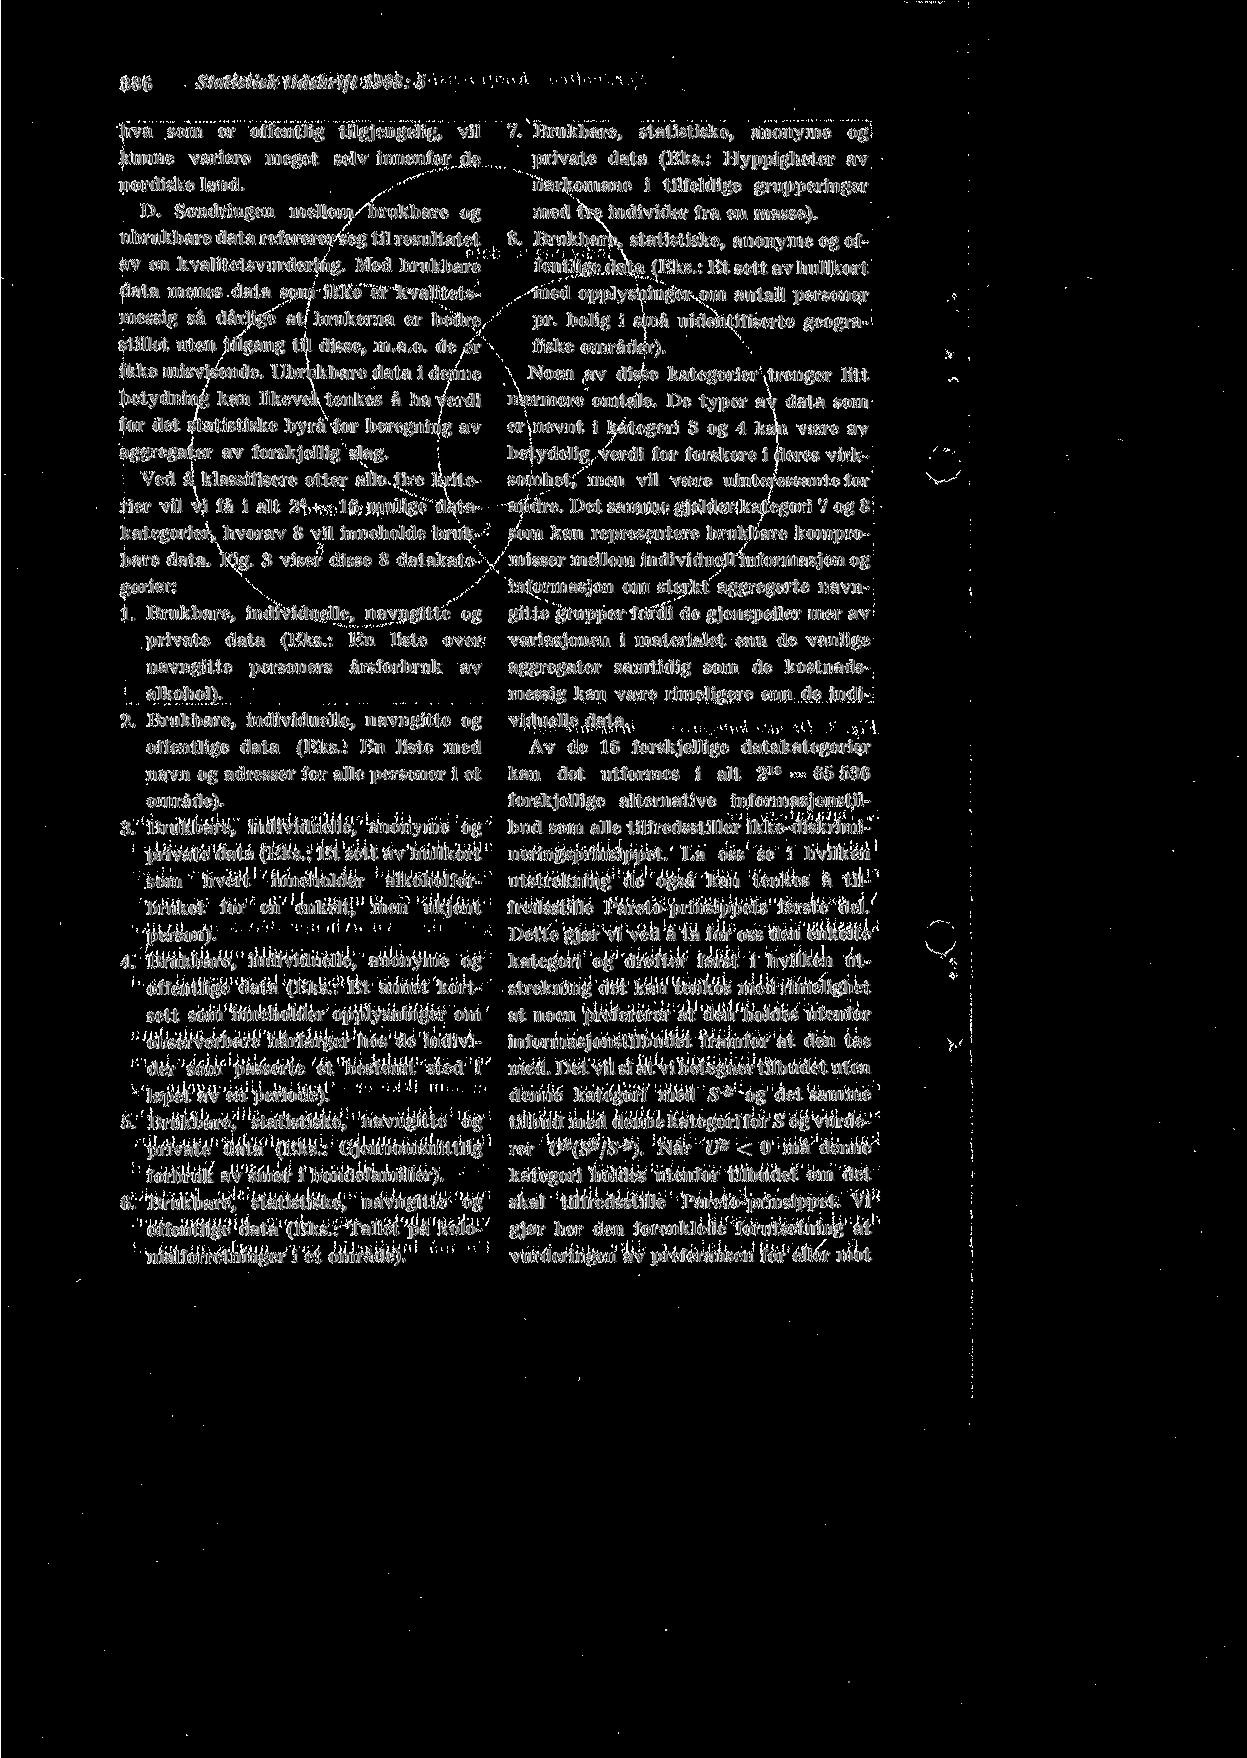 386 Statistisk tidskrift 1968: 5 hva som er offentlig tilgjengelig, vil kunne variere meget selv innenfor de nordiske land. D.